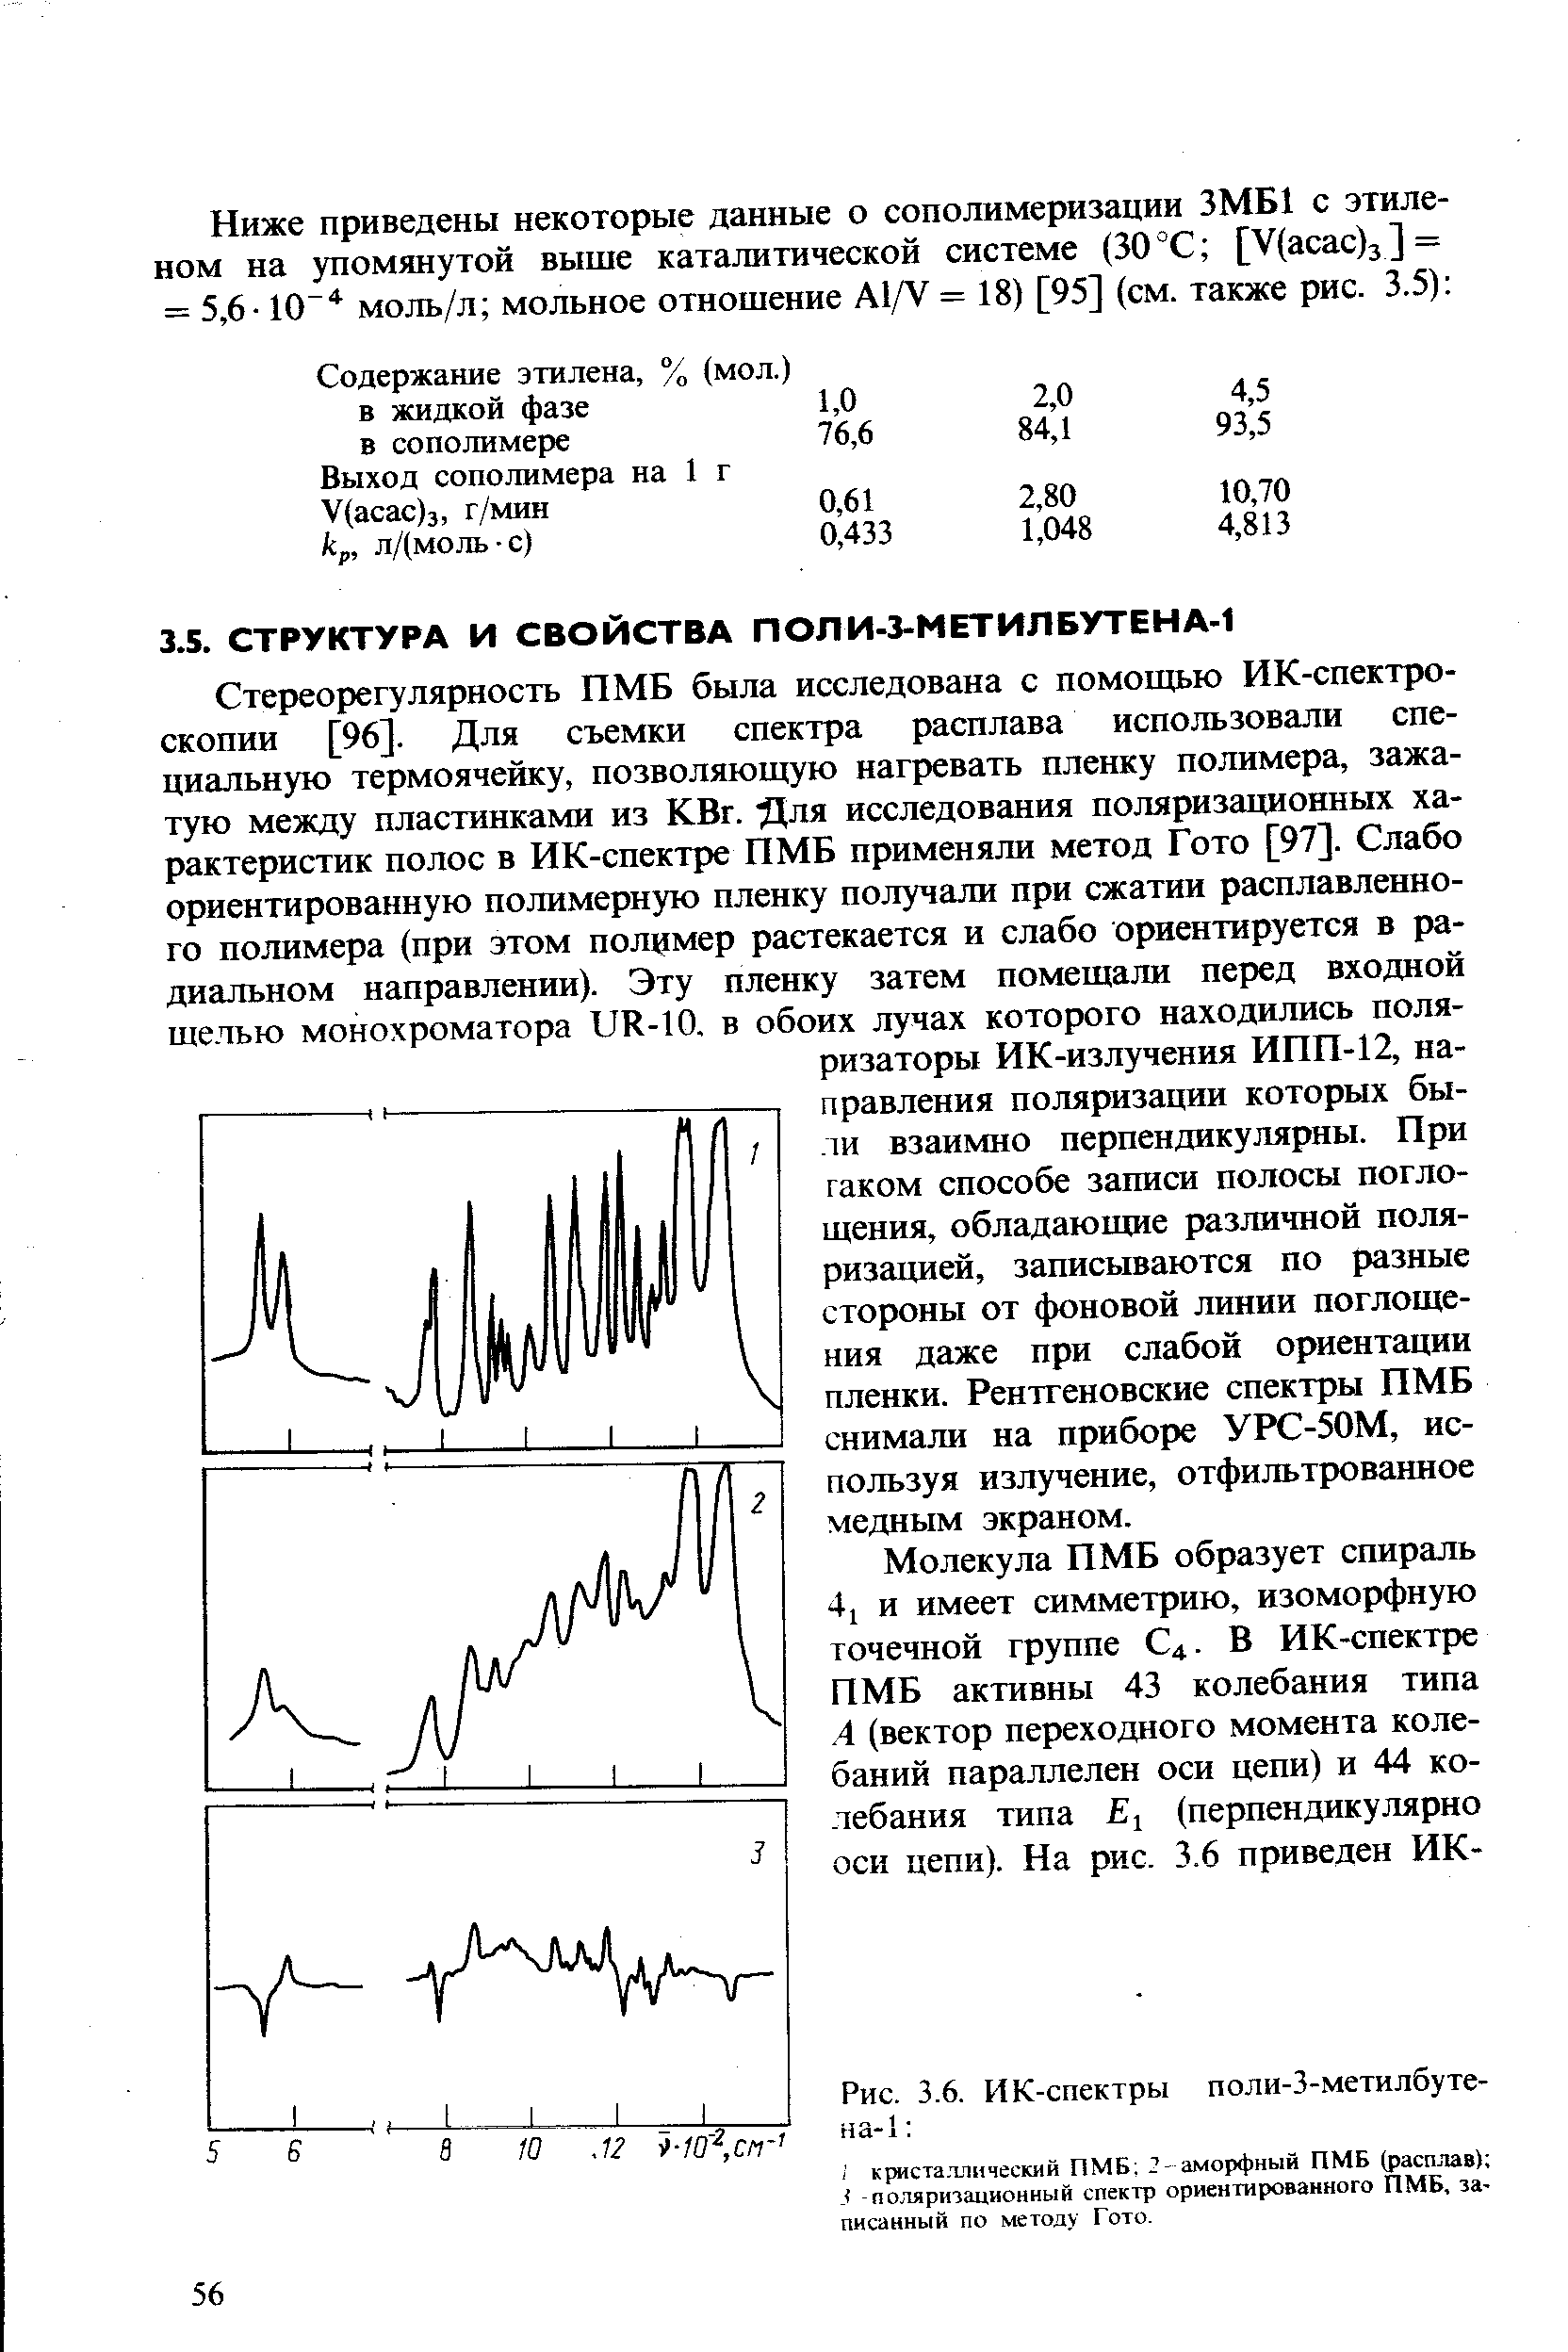 Стереорегулярность ПМБ была исследована с помощью ИК-спектроскопии [96]. Для съемки спектра расплава использовали специальную термоячейку, позволяющую нагревать пленку полимера, зажатую между пластинками из КВг. Для исследования поляризационных характеристик полос в ИК-спектре ПМБ применяли метод Гото [97]. Слабо ориентированную полимерную пленку получали при сжатии расплавленного полимера (при этом полимер растекается и слабо ориентируется в радиальном направлении). Эту пленку затем помещали перед входной щелью монохроматора иК-10. в обоих лучах которого находились поляризаторы ИК-излучения ИПП-12, направления поляризации которых были взаимно перпендикулярны. При гаком способе записи полосы поглощения, обладающие различной поля-ризахщей, записываются по разные стороны от фоновой линии поглощения даже при слабой ориентации пленки. Рентгеновские спектры ПМБ снимали на приборе УРС-50М, используя излучение, отфильтрованное медным экраном.